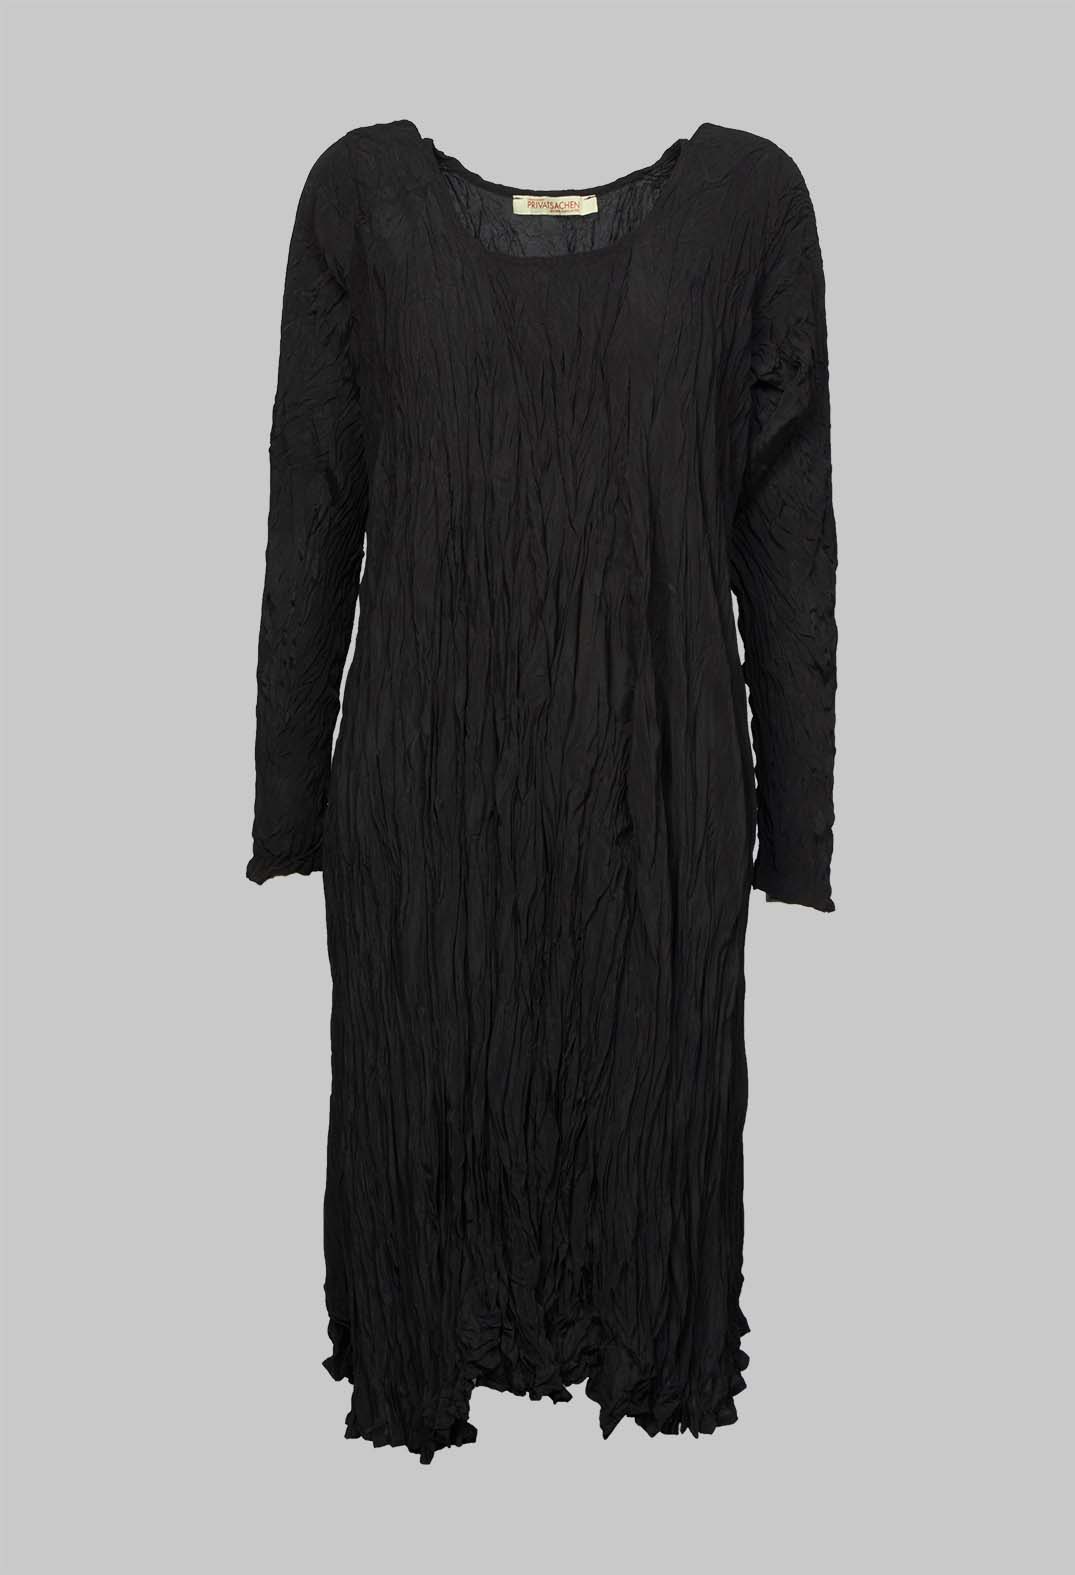 Naturgeid Dress in Kaviar Black